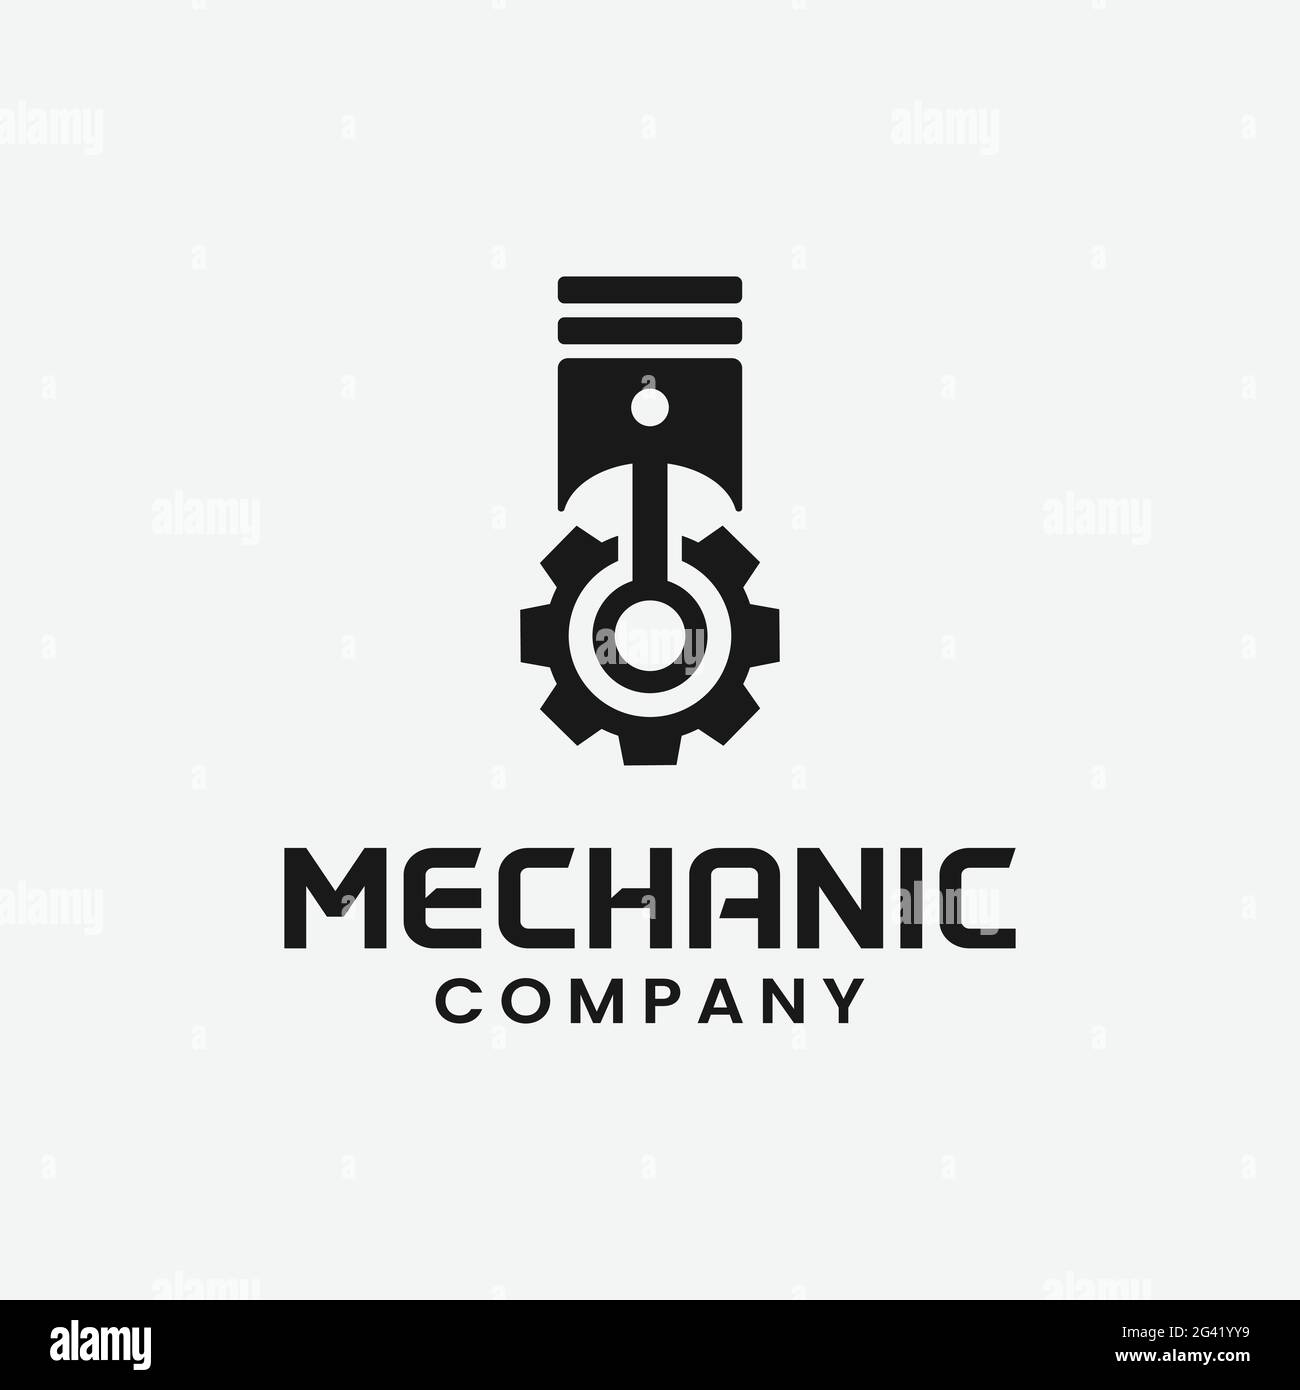 Getriebe und Kolben für Mechanic Logo Design Template. Geeignet für Kfz-Maschinen Wartung Engineering Transport Werkstatt Unternehmen Geschäft Stock Vektor